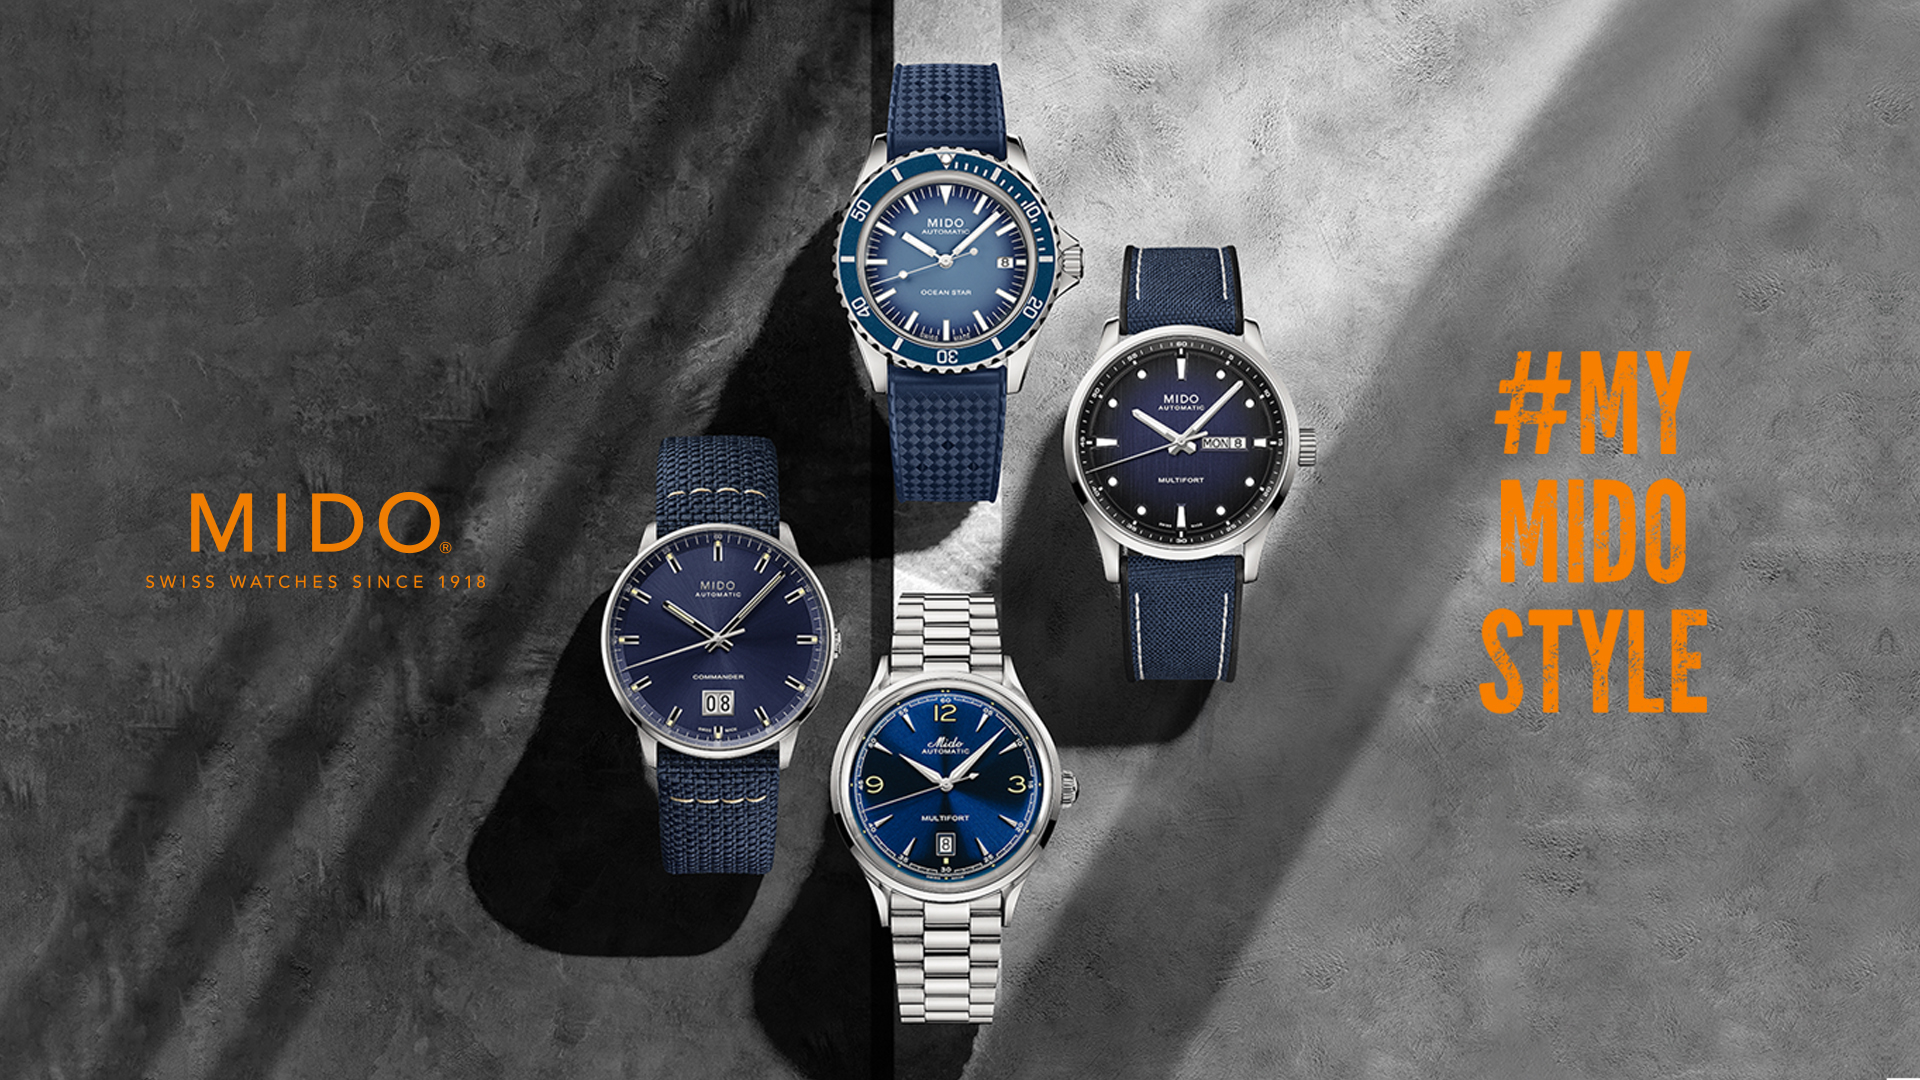 Tienda en línea especializada en la venta relojes Swiss Made. Distribuidor autorizado de marcas de prestigio. La mejor coleccionistas y amantes de la relojería | Watches World Shop Watches